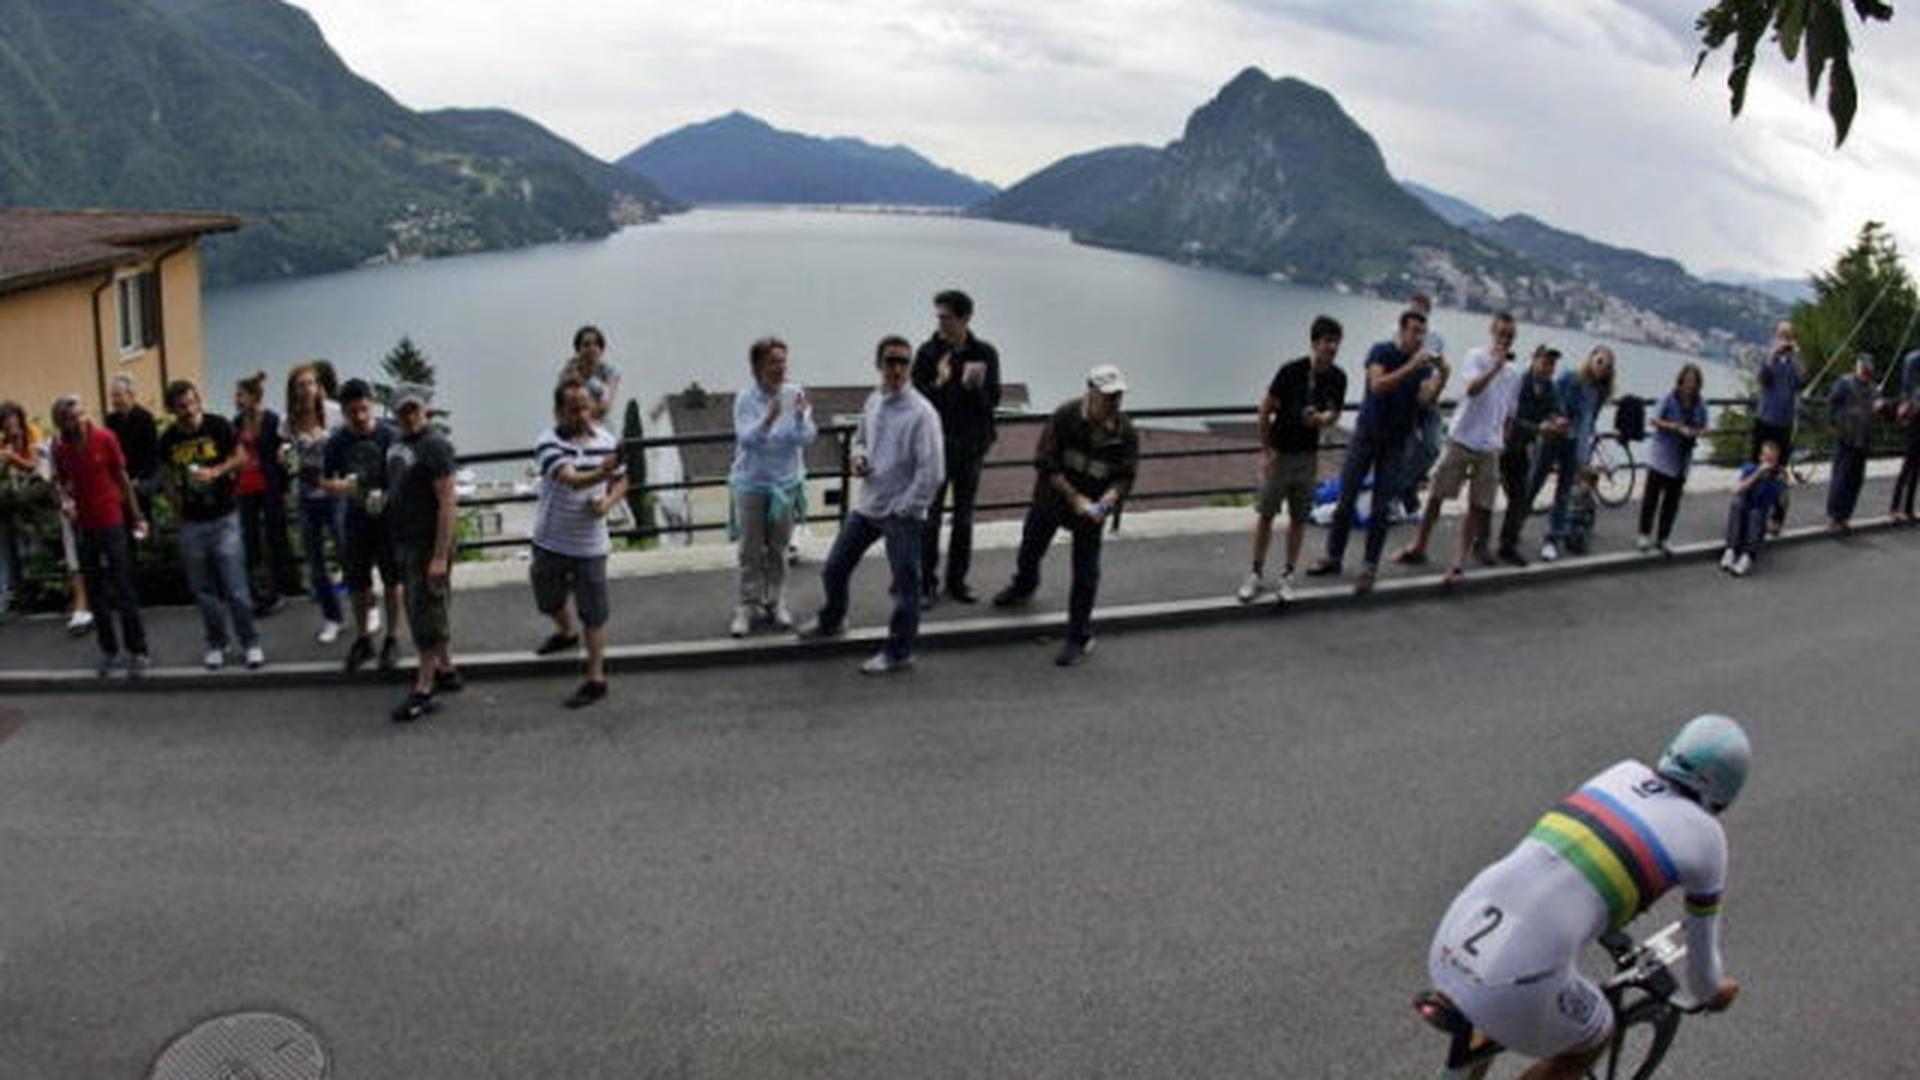 Dans le fabuleux décor qu'offre Lugano et son lac, Fabian Cancellara a régalé ses supporters